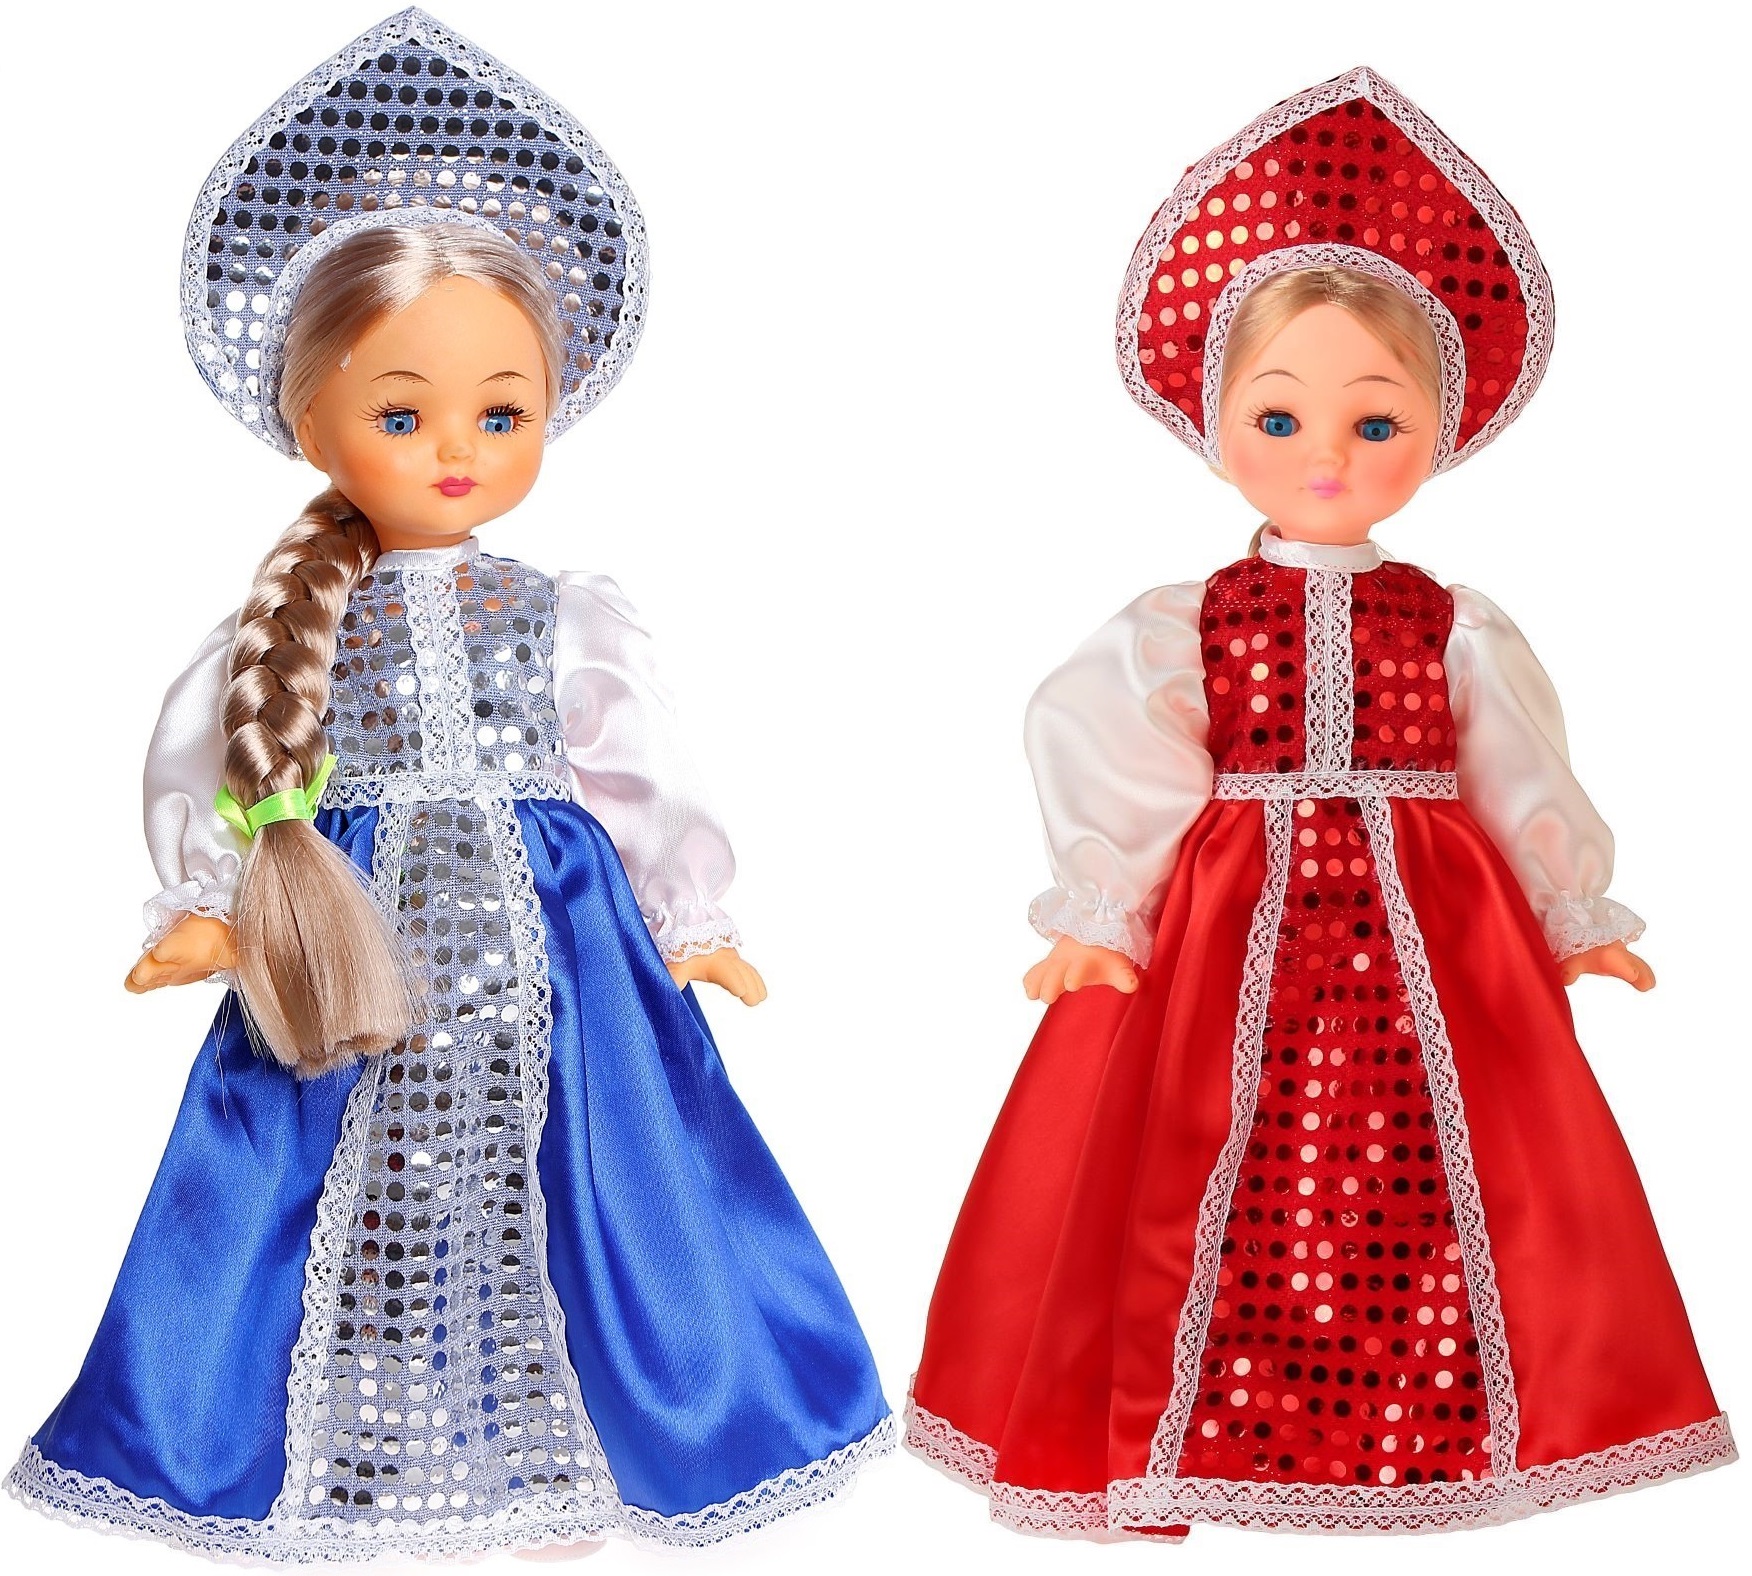 Куклы в народных костюмах - YouTube. Кукла в народном костюме. Куклы своими руками.4